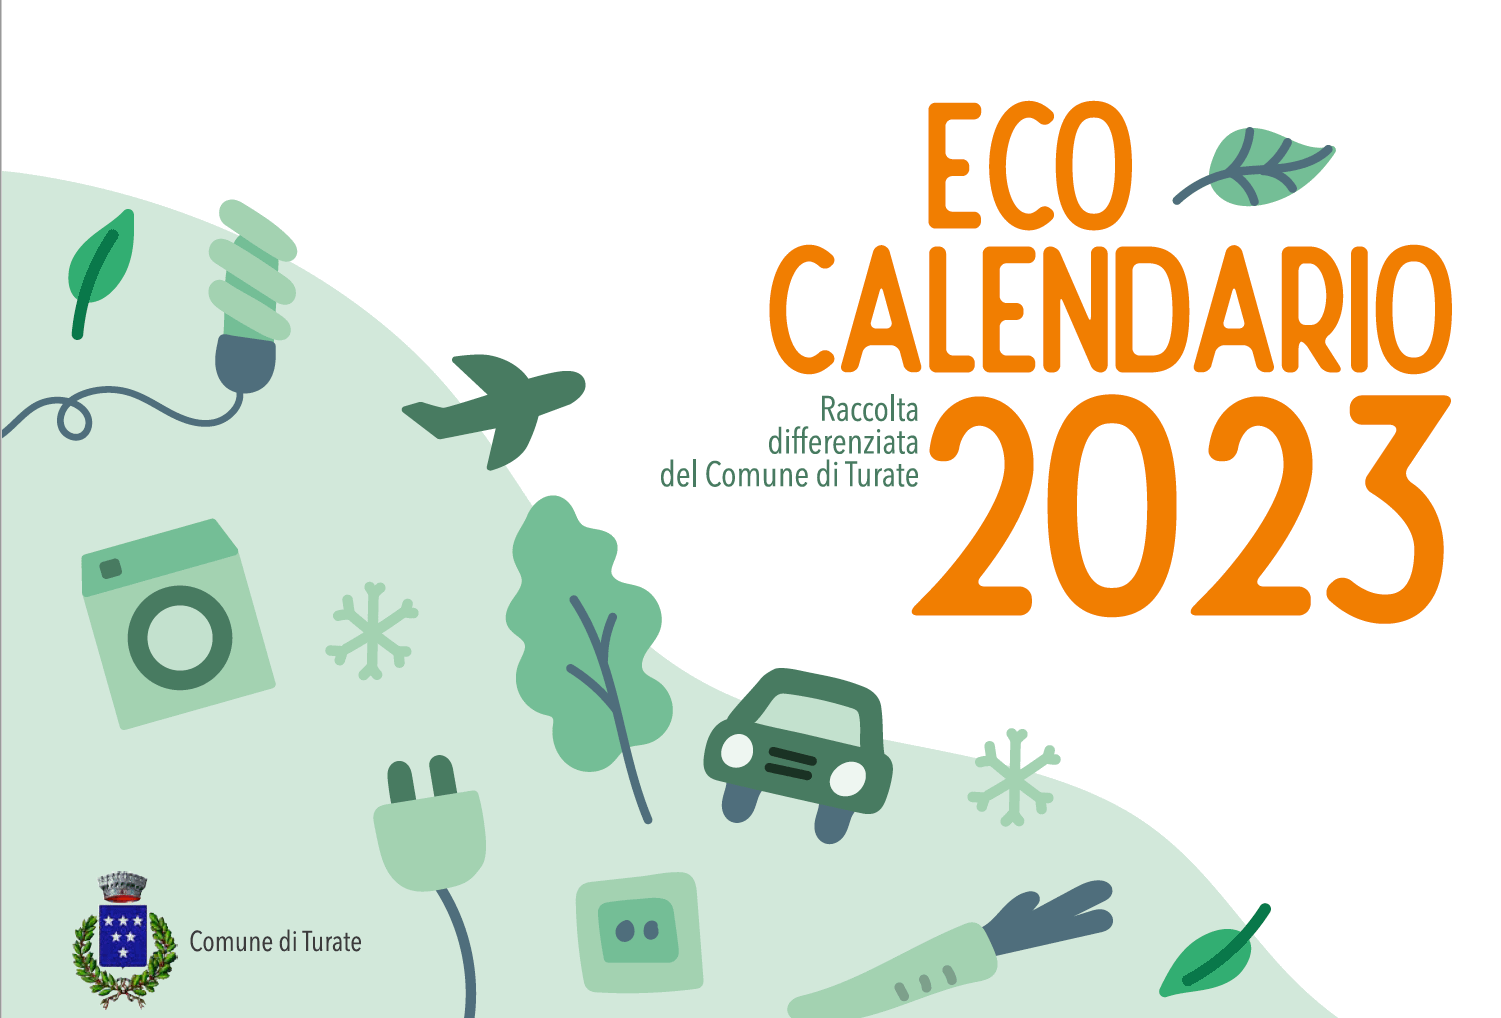 Scarica il Eco Calendario 2023 della Raccolta Differenziata del comune di Turate